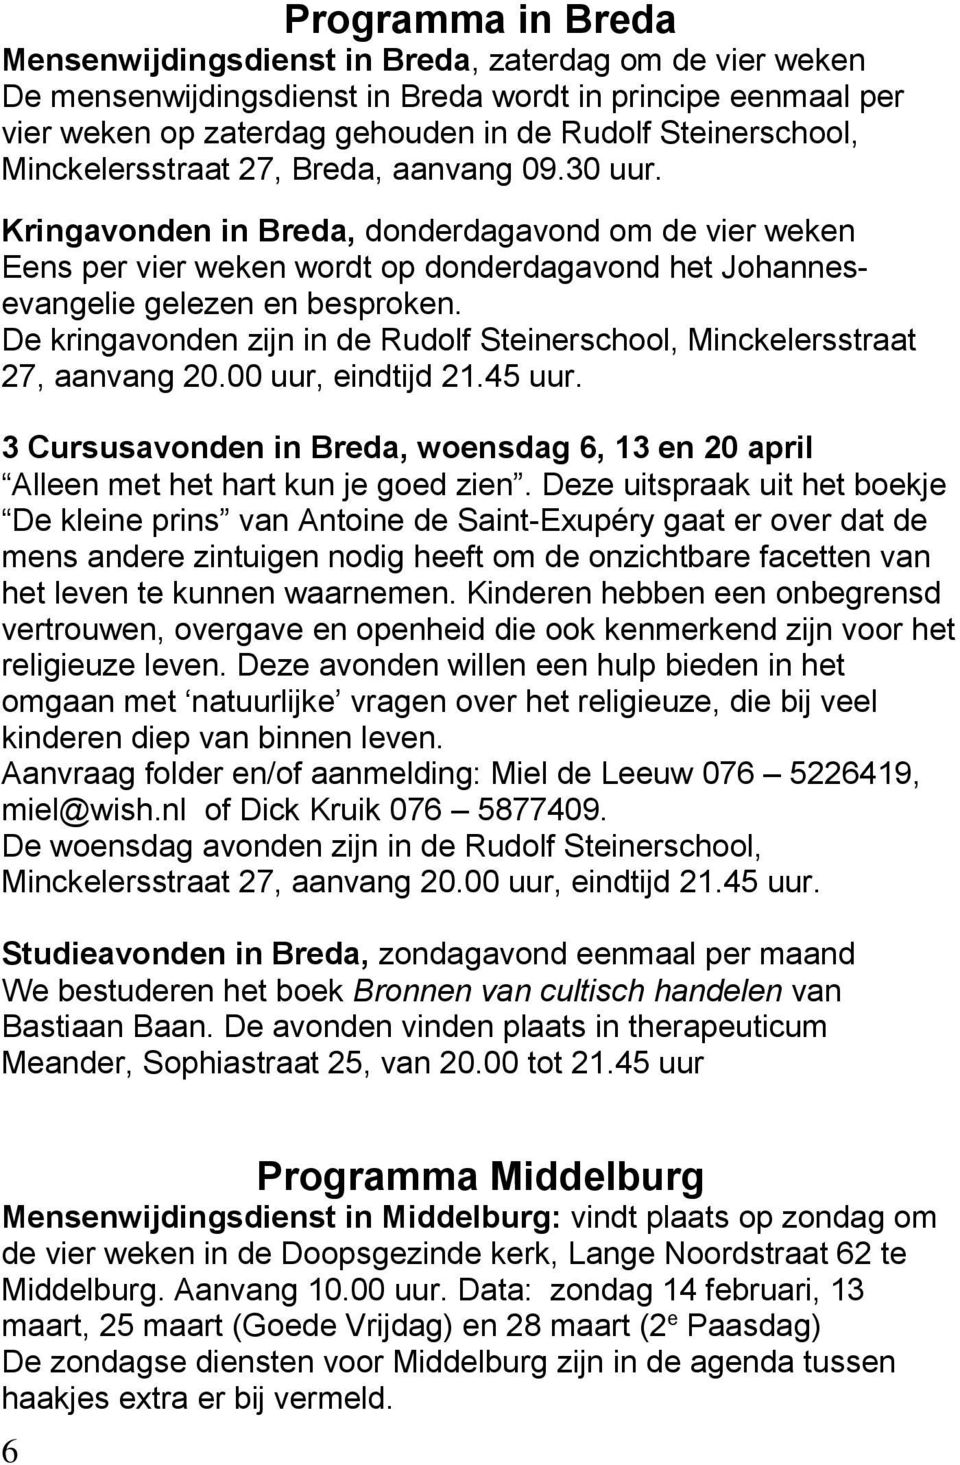 De kringavonden zijn in de Rudolf Steinerschool, Minckelersstraat 27, aanvang 20.00 uur, eindtijd 21.45 uur. 3 Cursusavonden in Breda, woensdag 6, 13 en 20 april Alleen met het hart kun je goed zien.